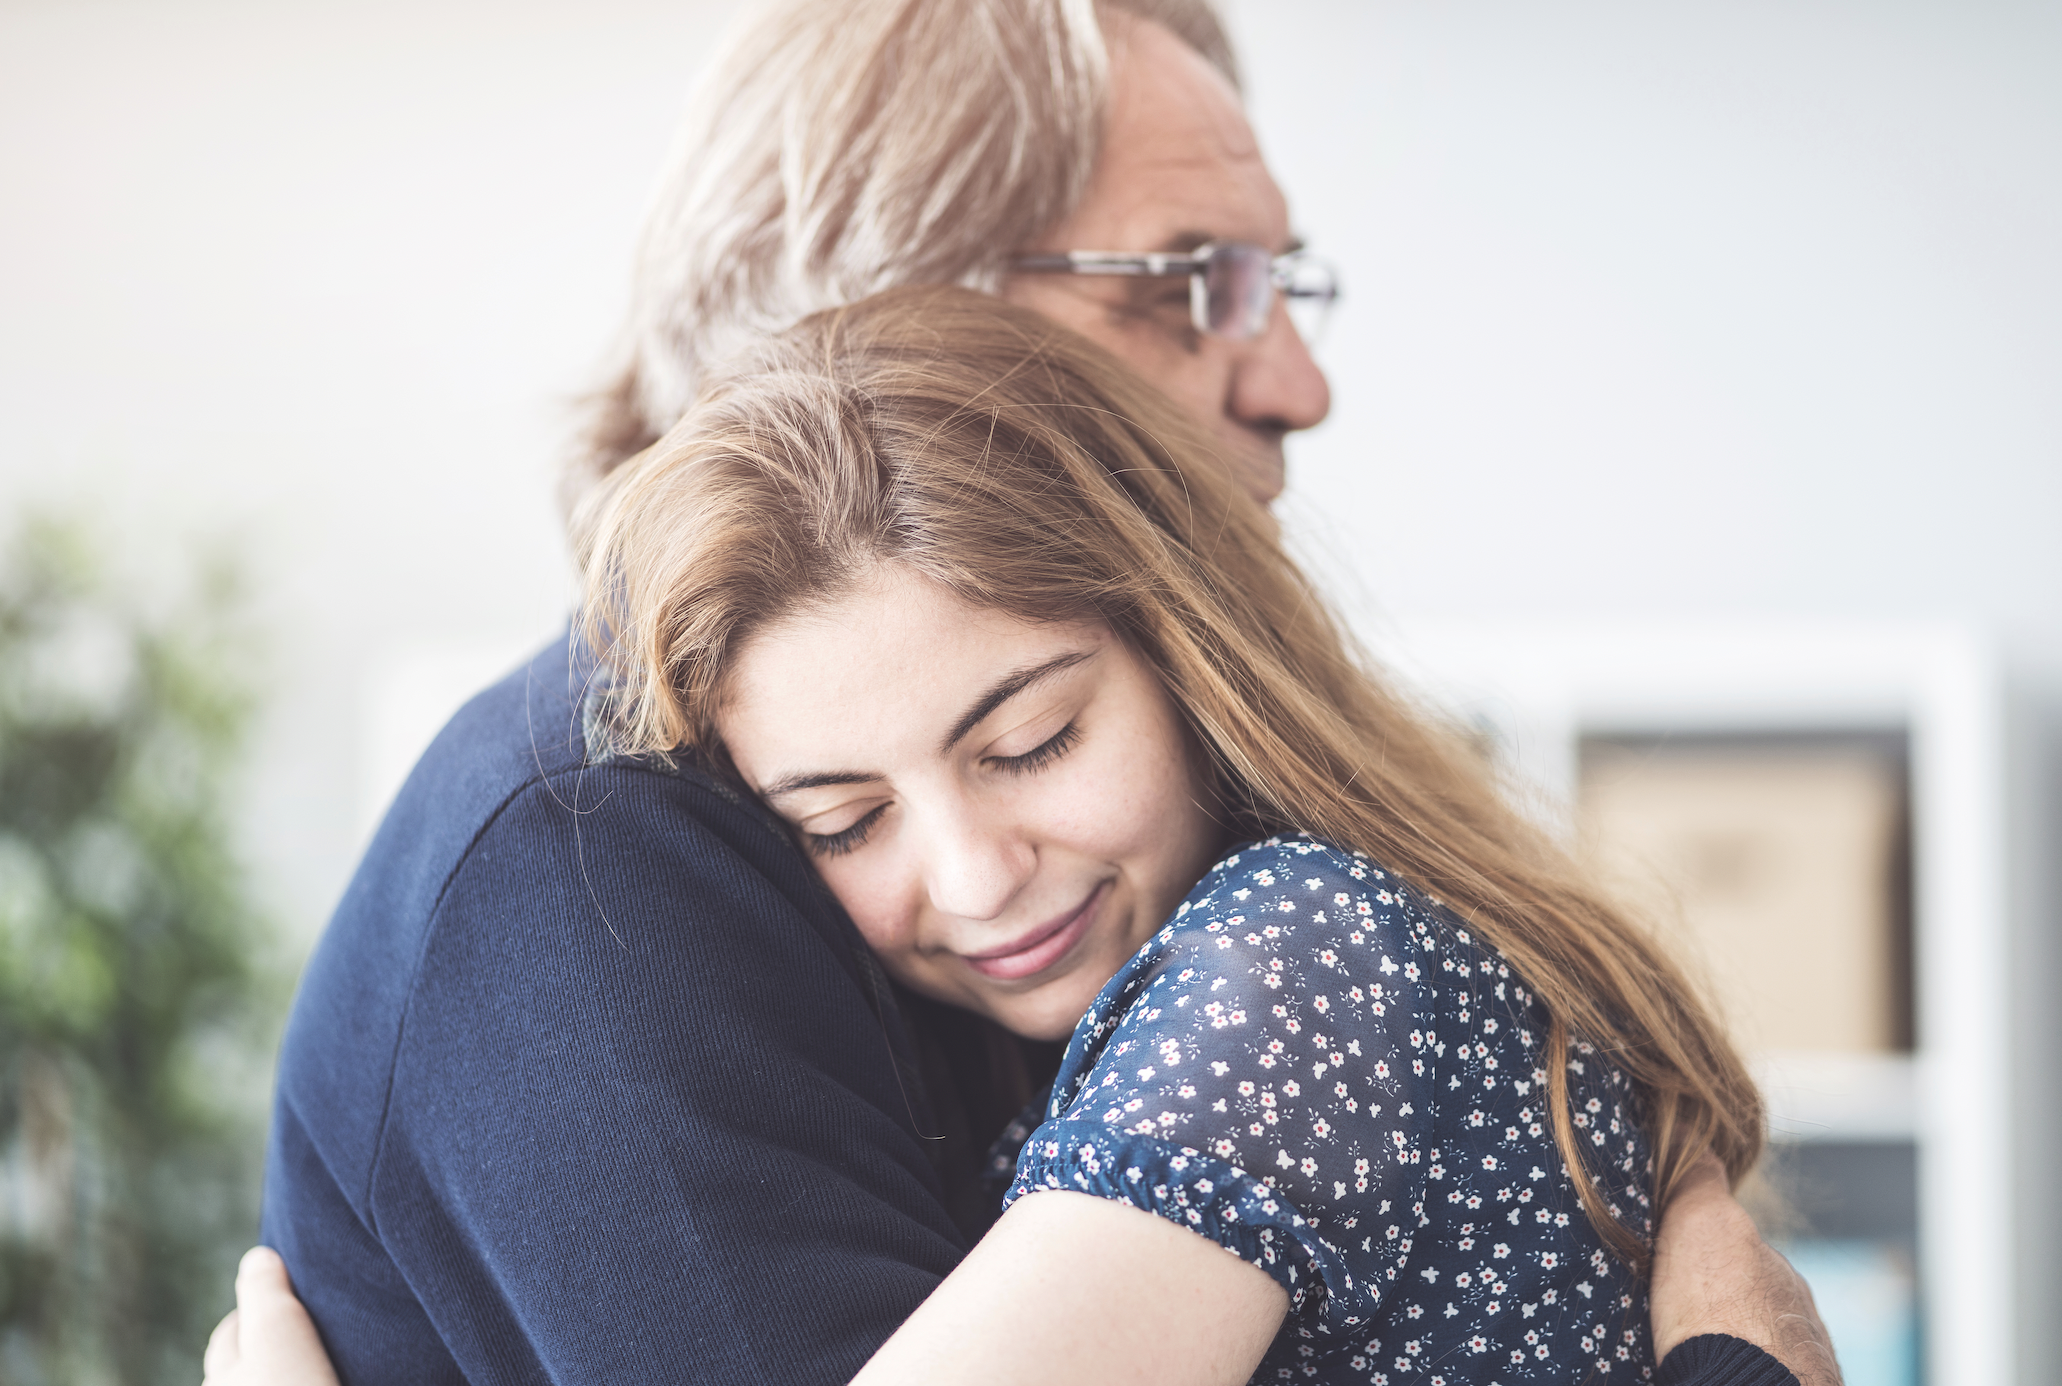 Dad hugs his daughter | Source: Shutterstock